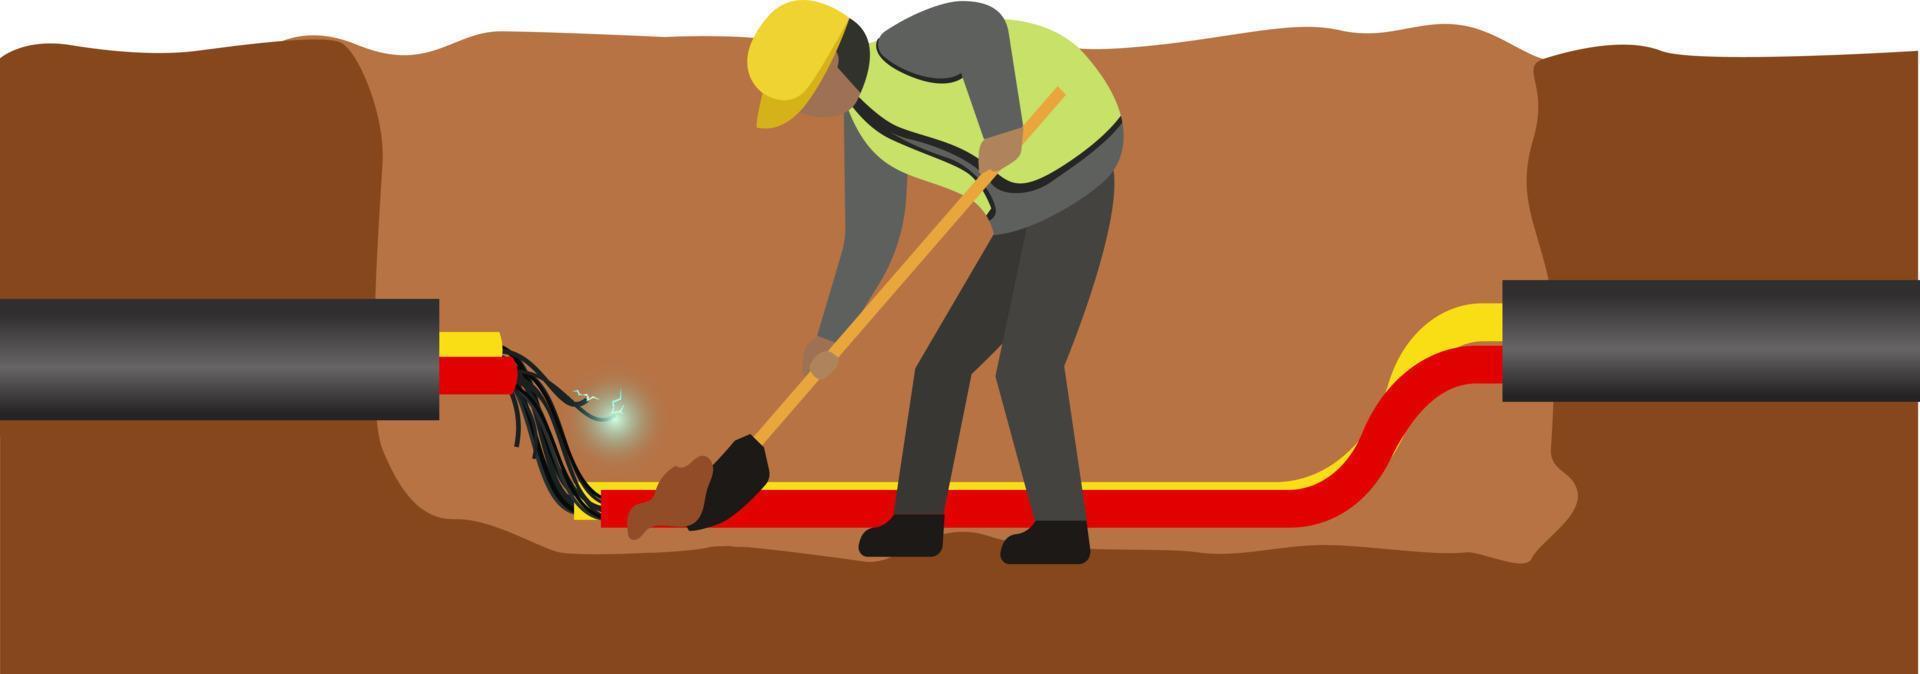 construcción obrero, reparando roto cable tubo en hormigón suelo vector